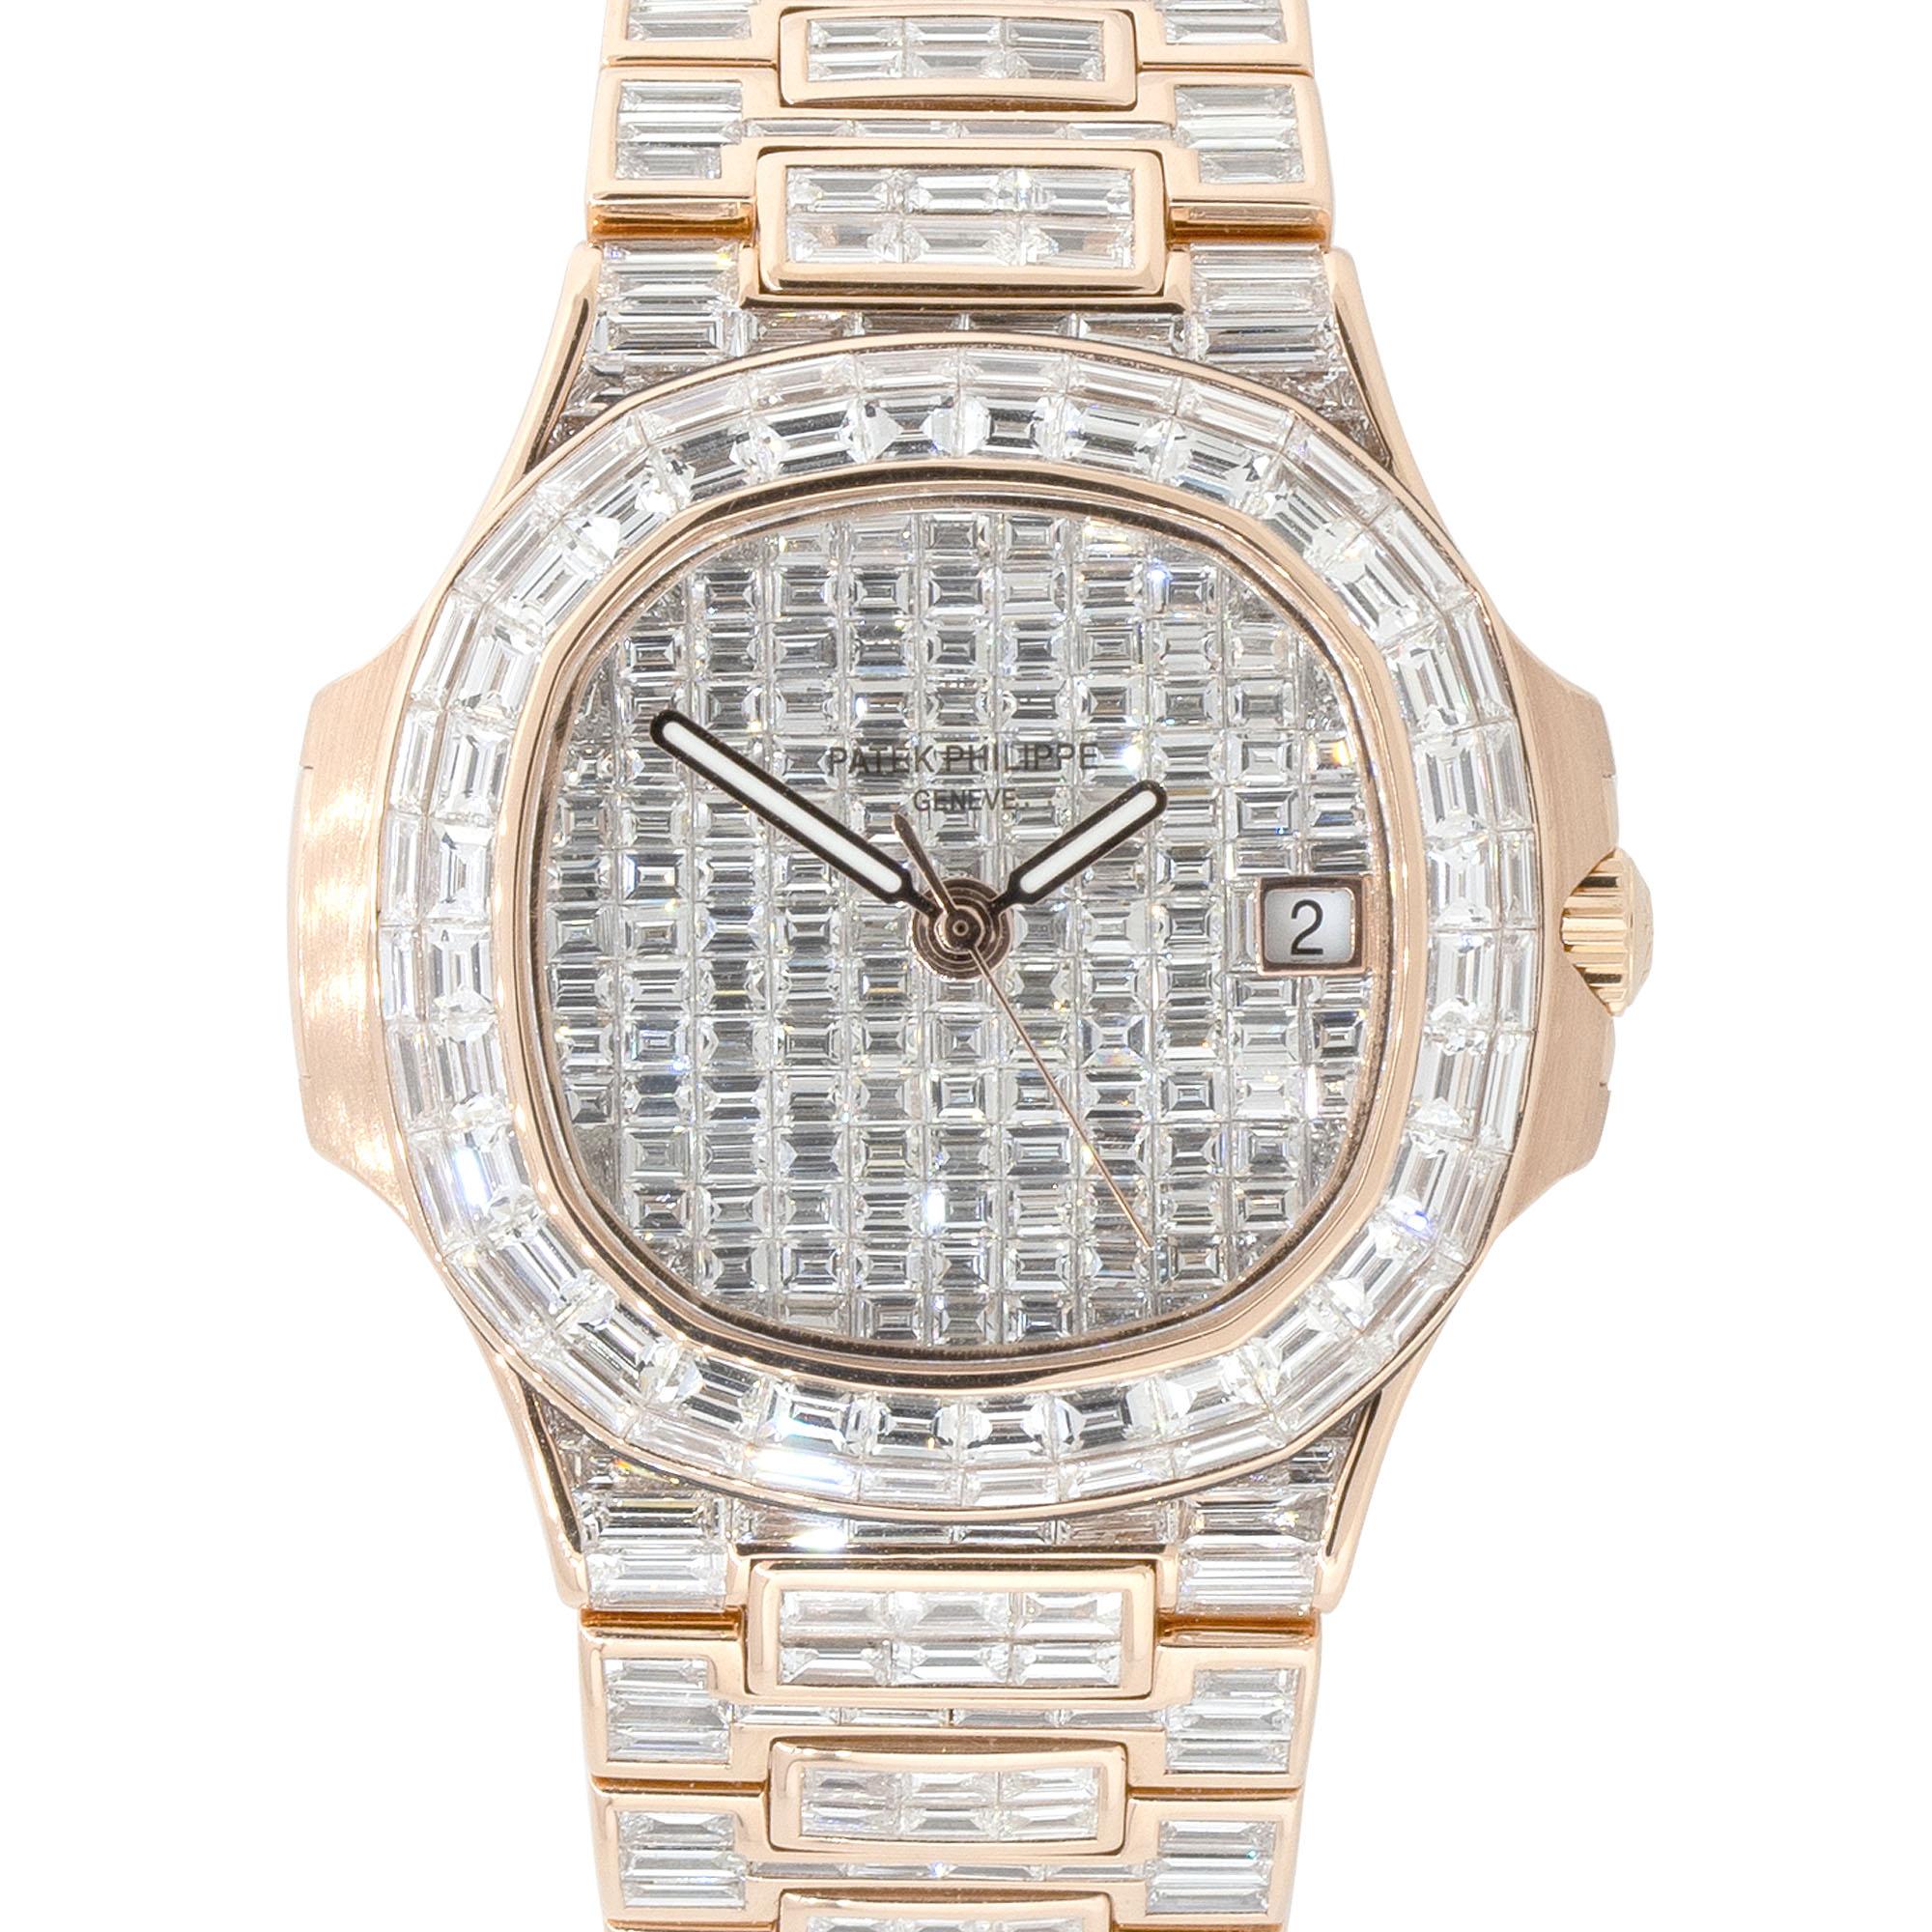 Marque : Patek Philippe
La montre Patek Philippe Nautilus en or rose 18 carats avec diamants baguettes est un symbole de luxe ultime, qui illustre à la fois l'expertise horlogère de la marque et sa maîtrise de l'artisanat joaillier. Il s'agit d'un